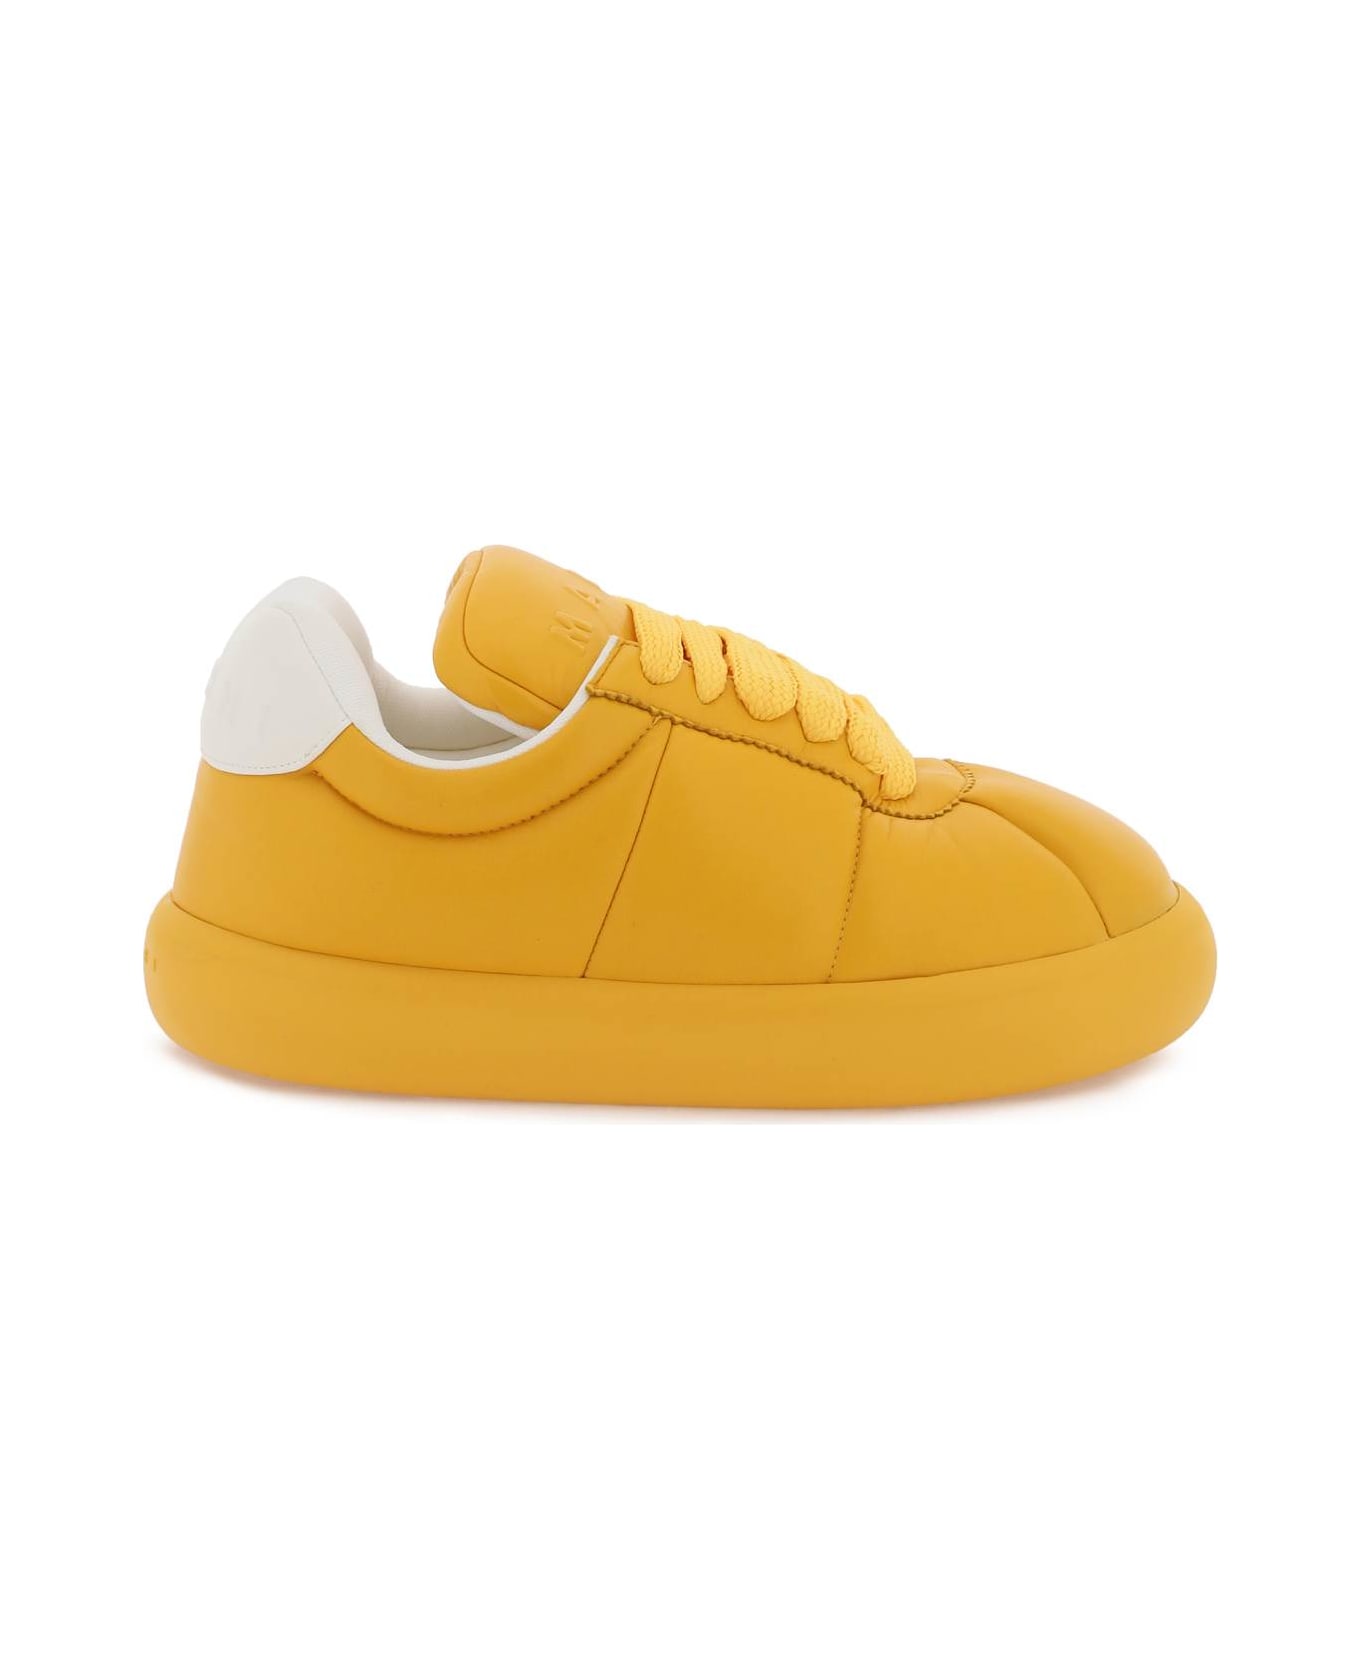 Marni Leather Bigfoot 2.0 Sneakers - LIGHT ORANGE (Yellow)